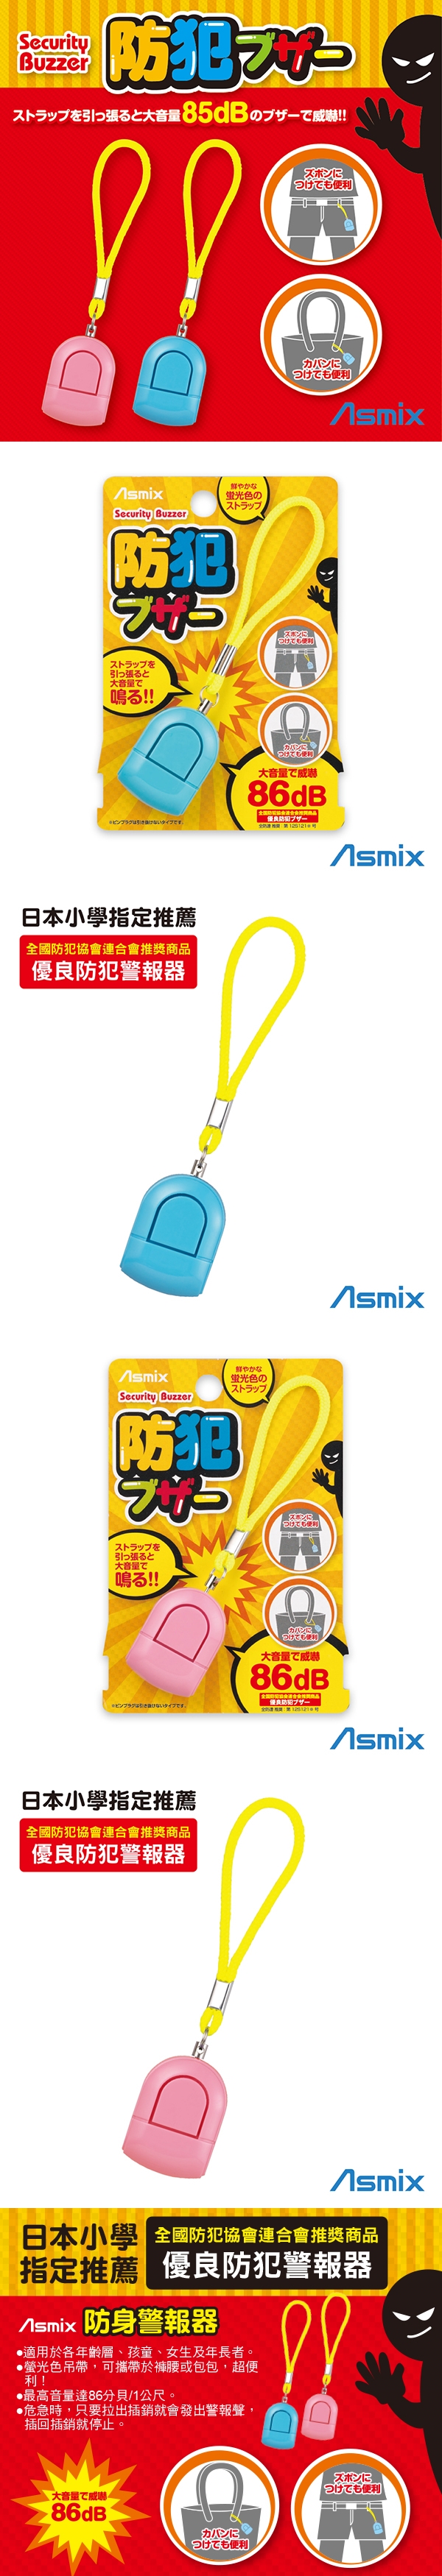 唯可ASMIX-防身警報器(藍色/粉色)GE039